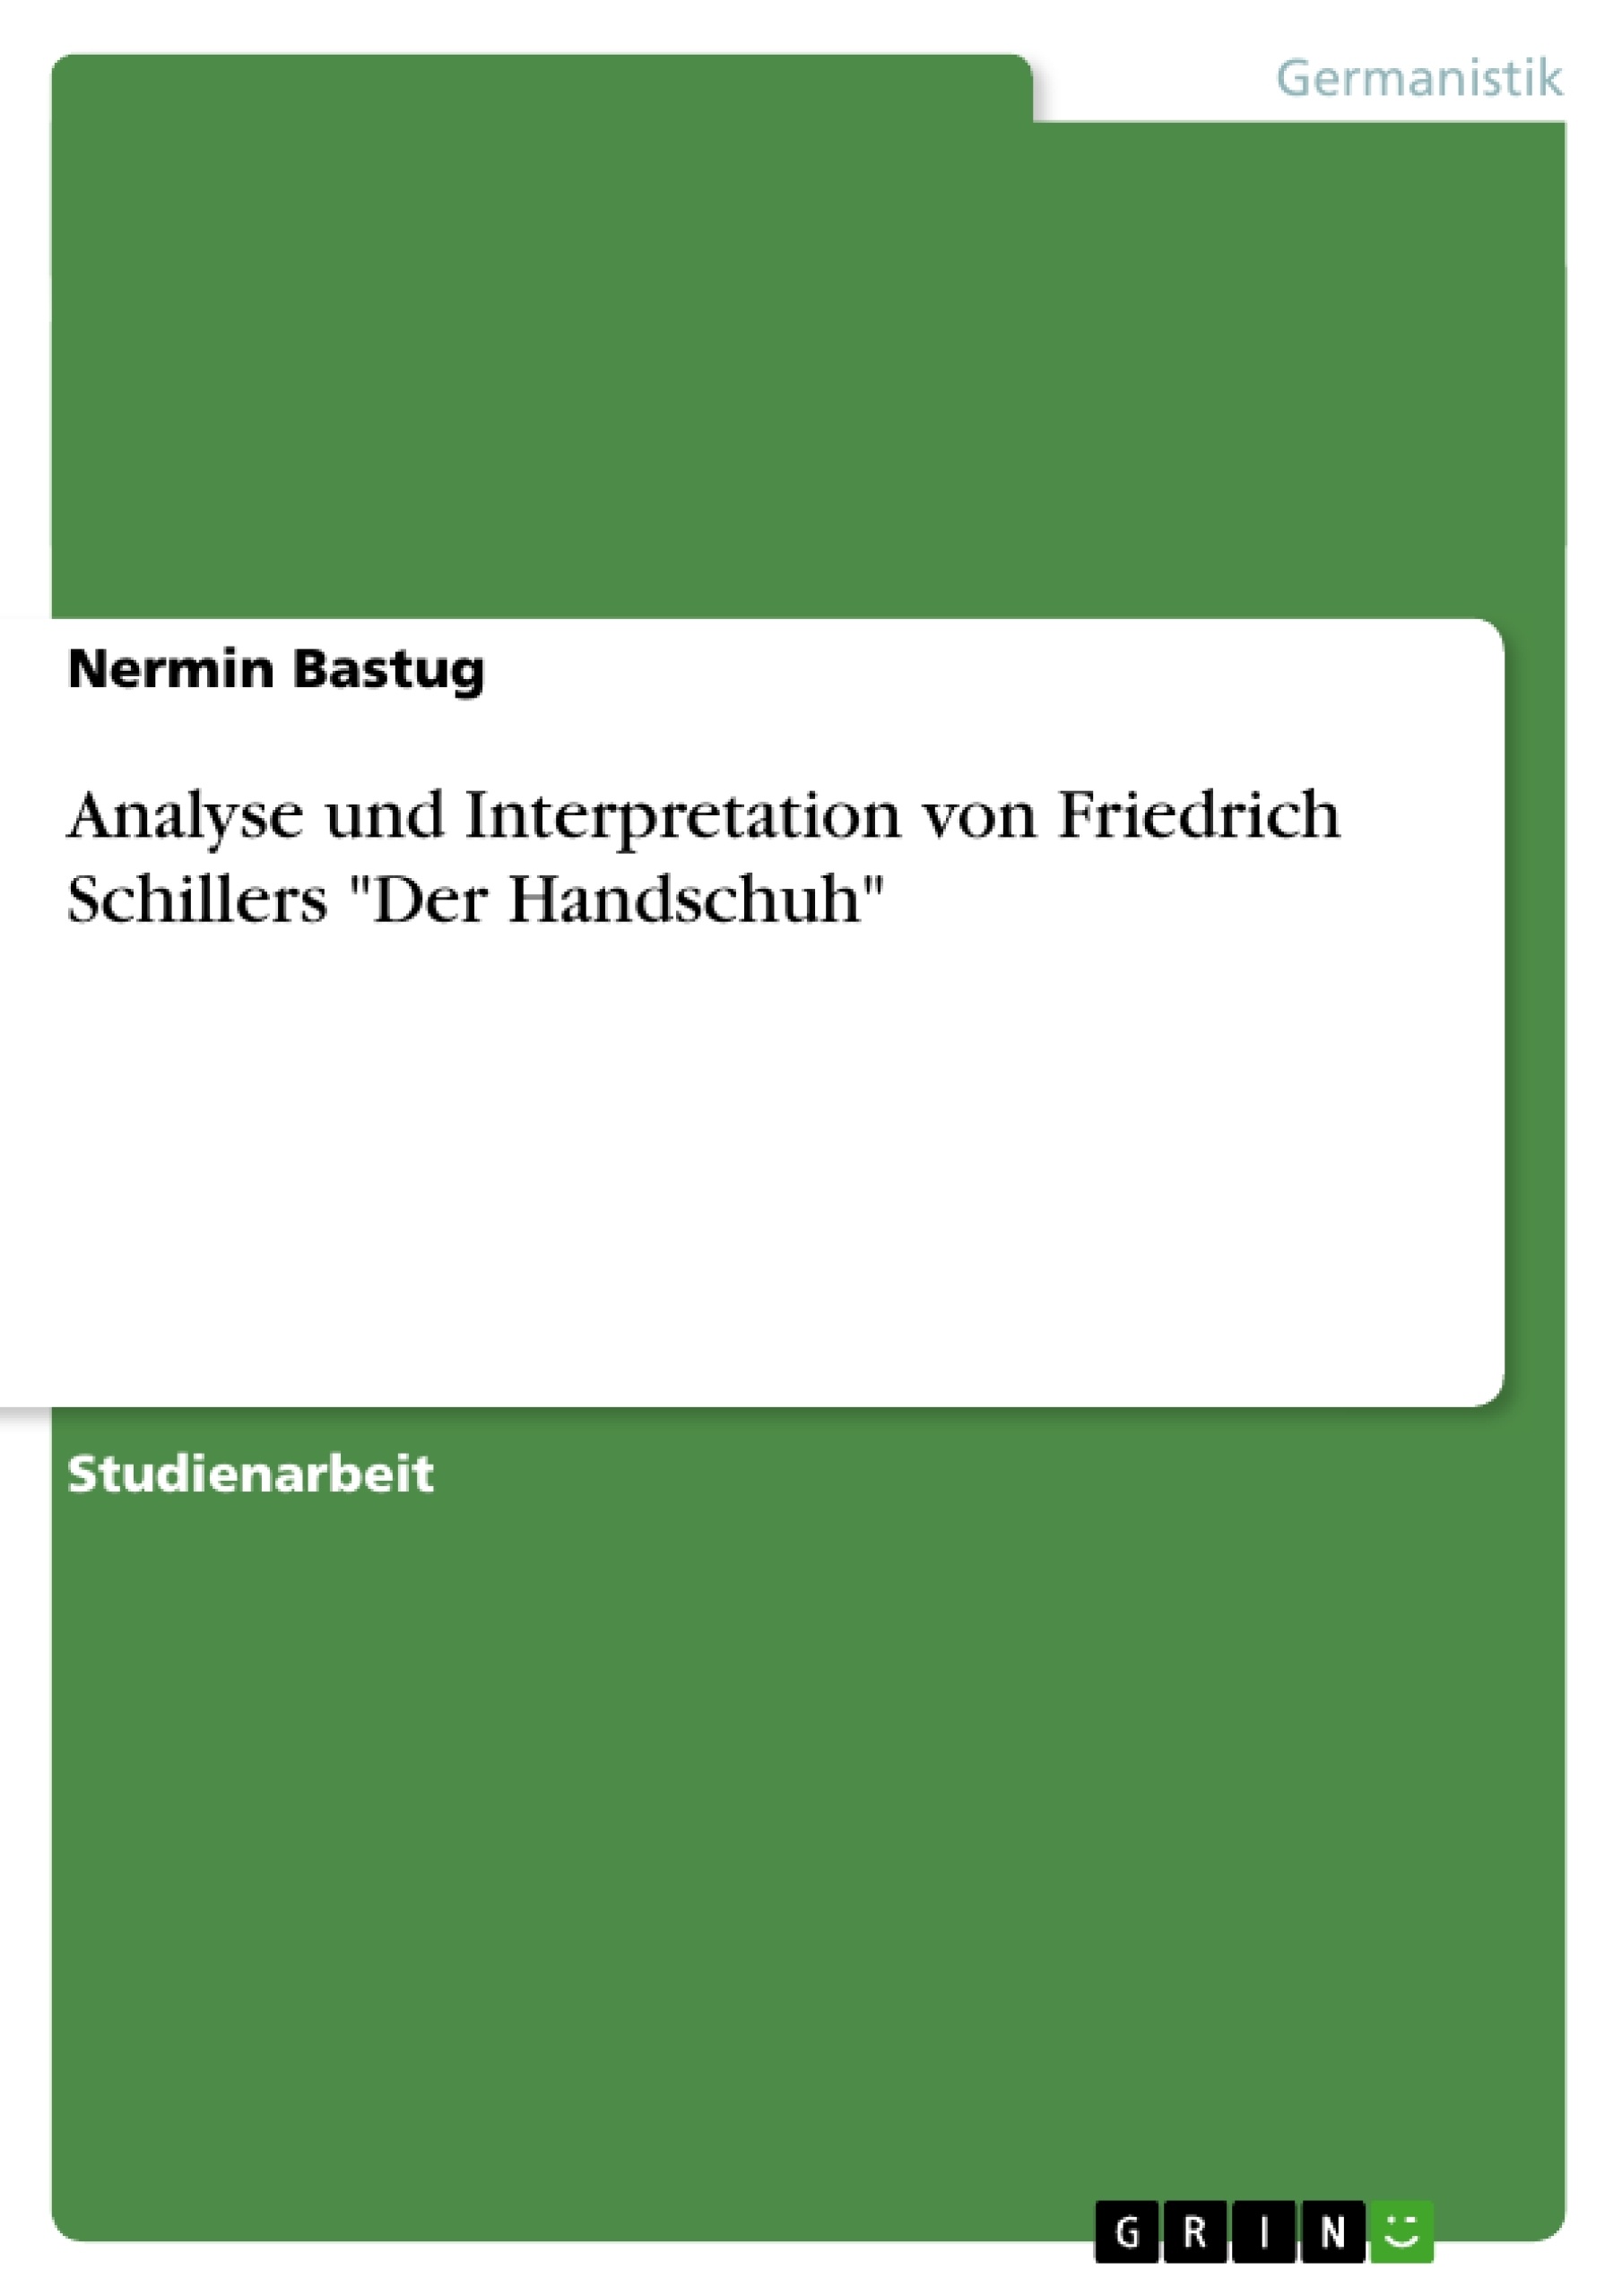 Titre: Analyse und Interpretation von Friedrich Schillers "Der Handschuh"